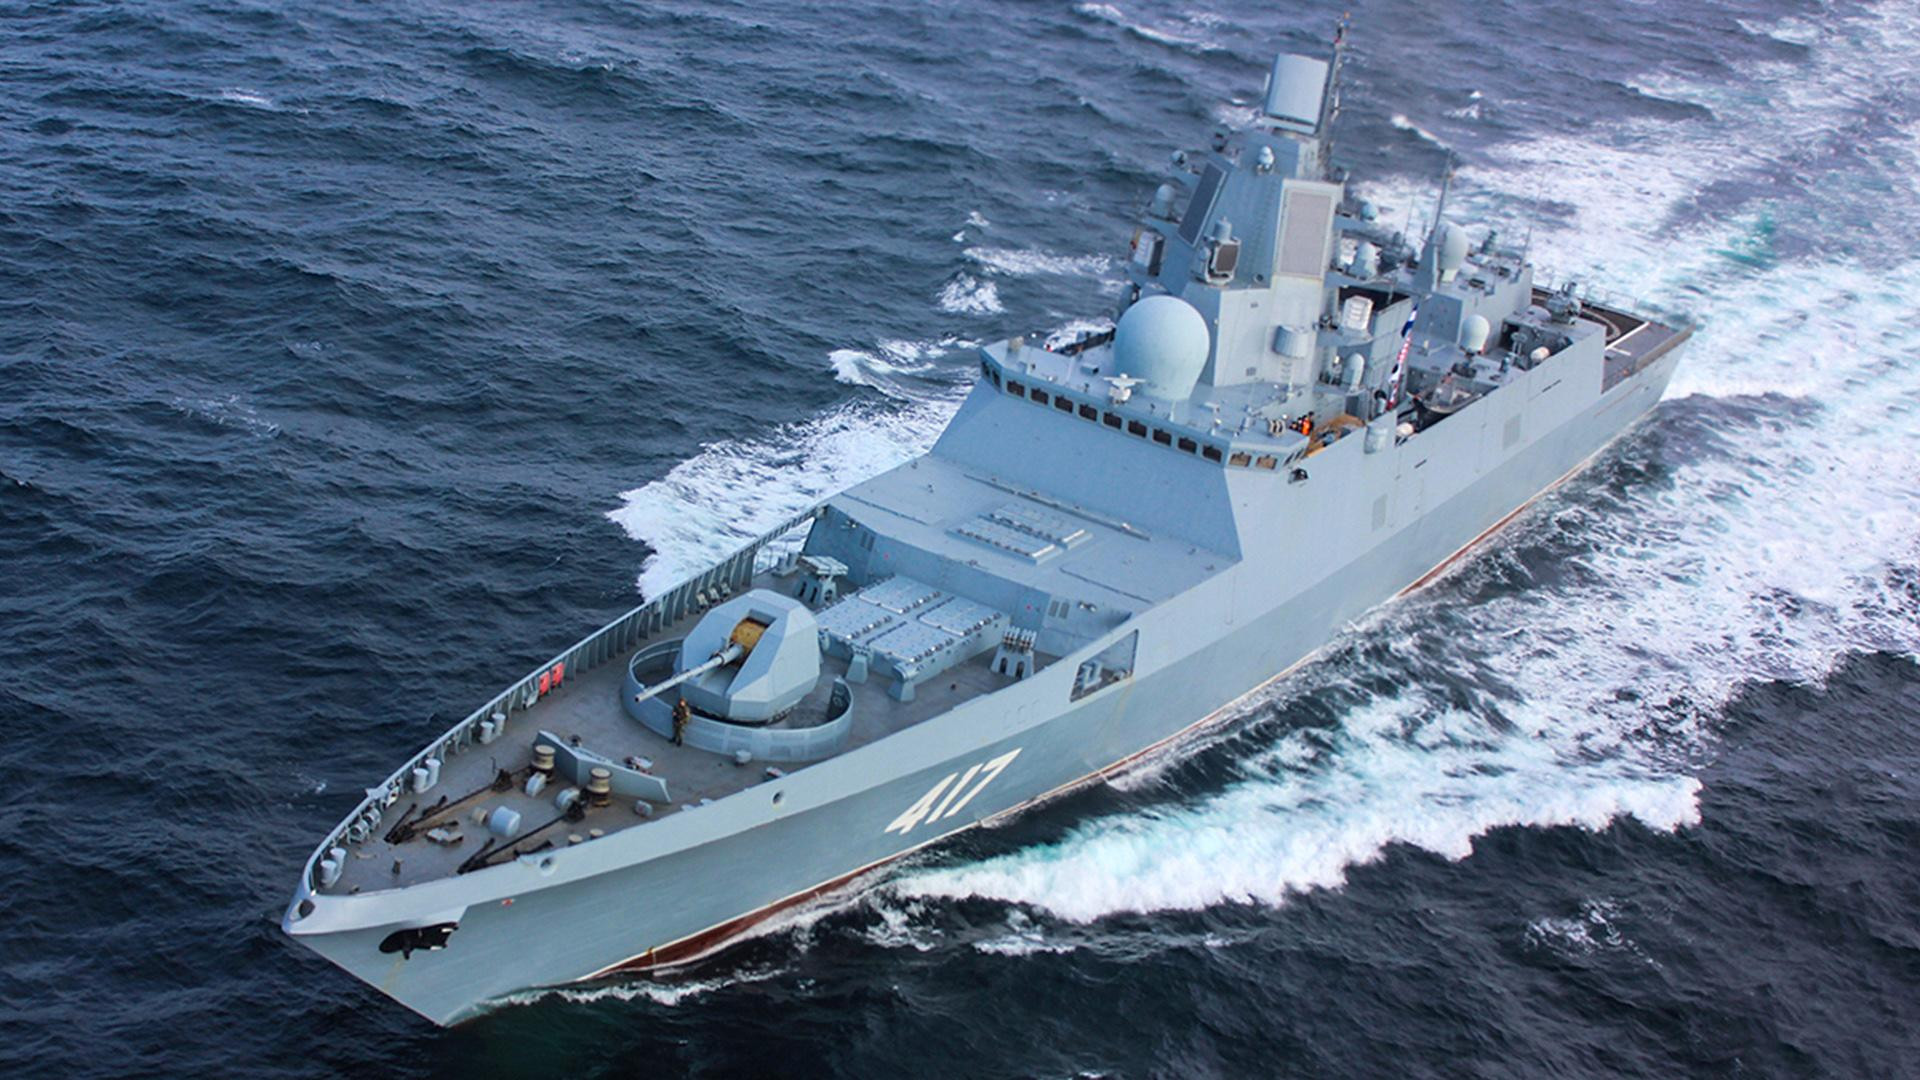 Зеленський: кораблям РФ заборонили прохід через Чорне море - зображення